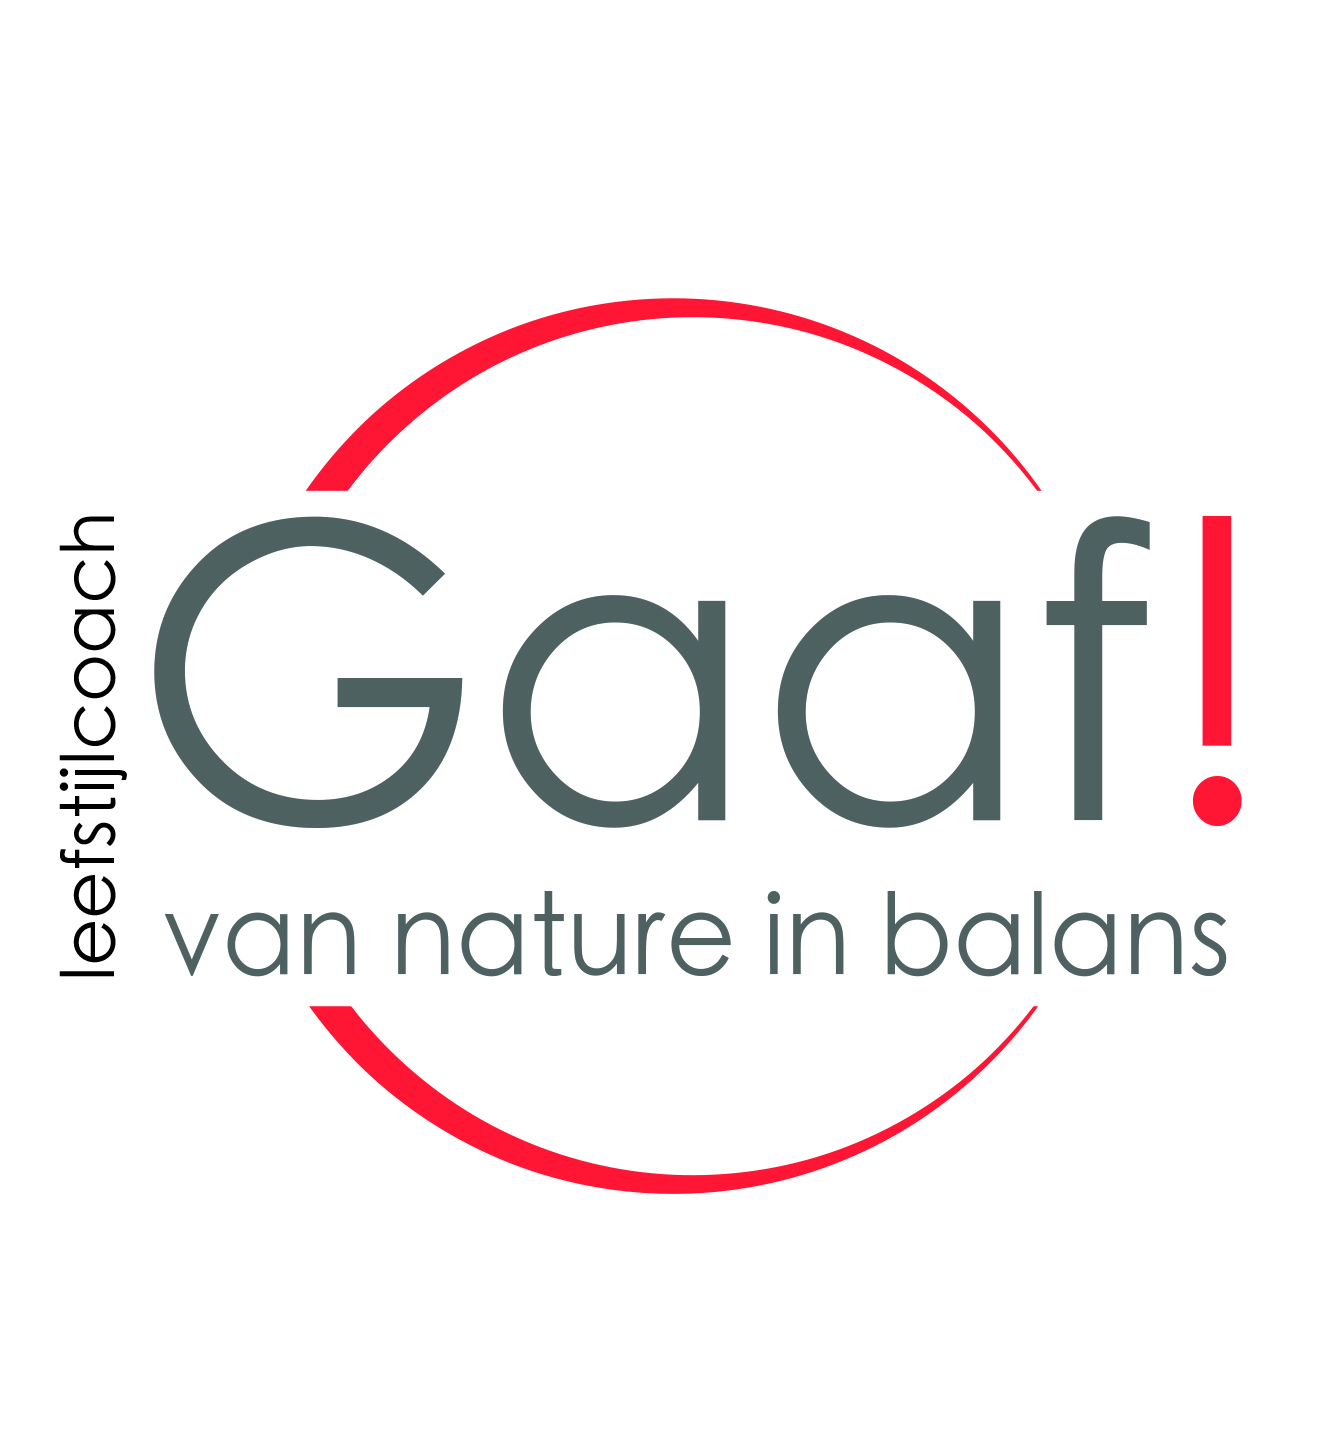 Gaaf! Leefstijlcoach, van nature in balans Branding by Studio CC